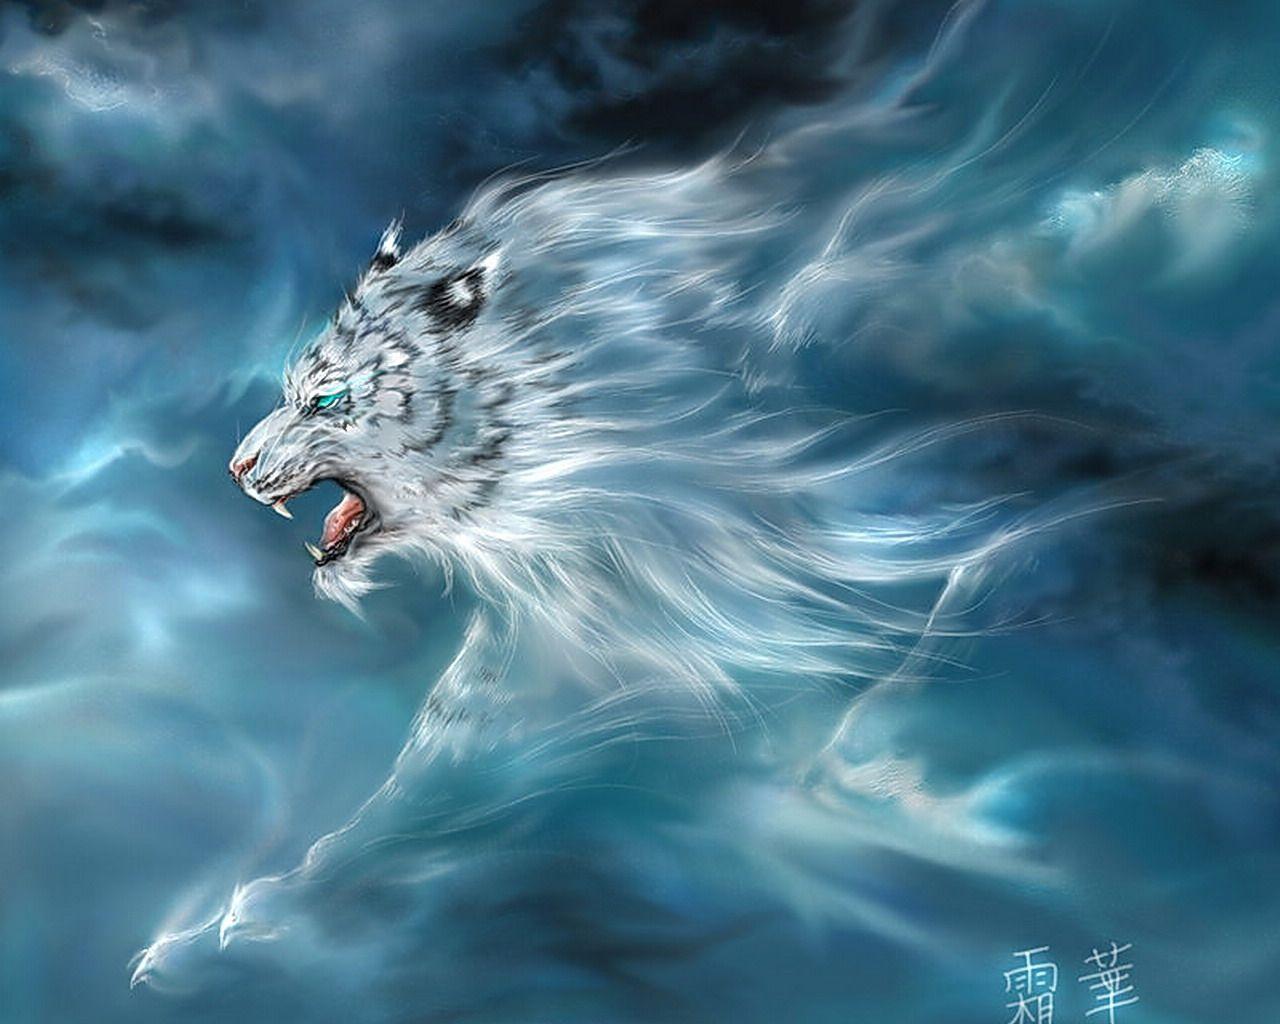 Tiger HD Wallpaper. Background. Mythological creatures, Mythical creatures, Chinese mythology